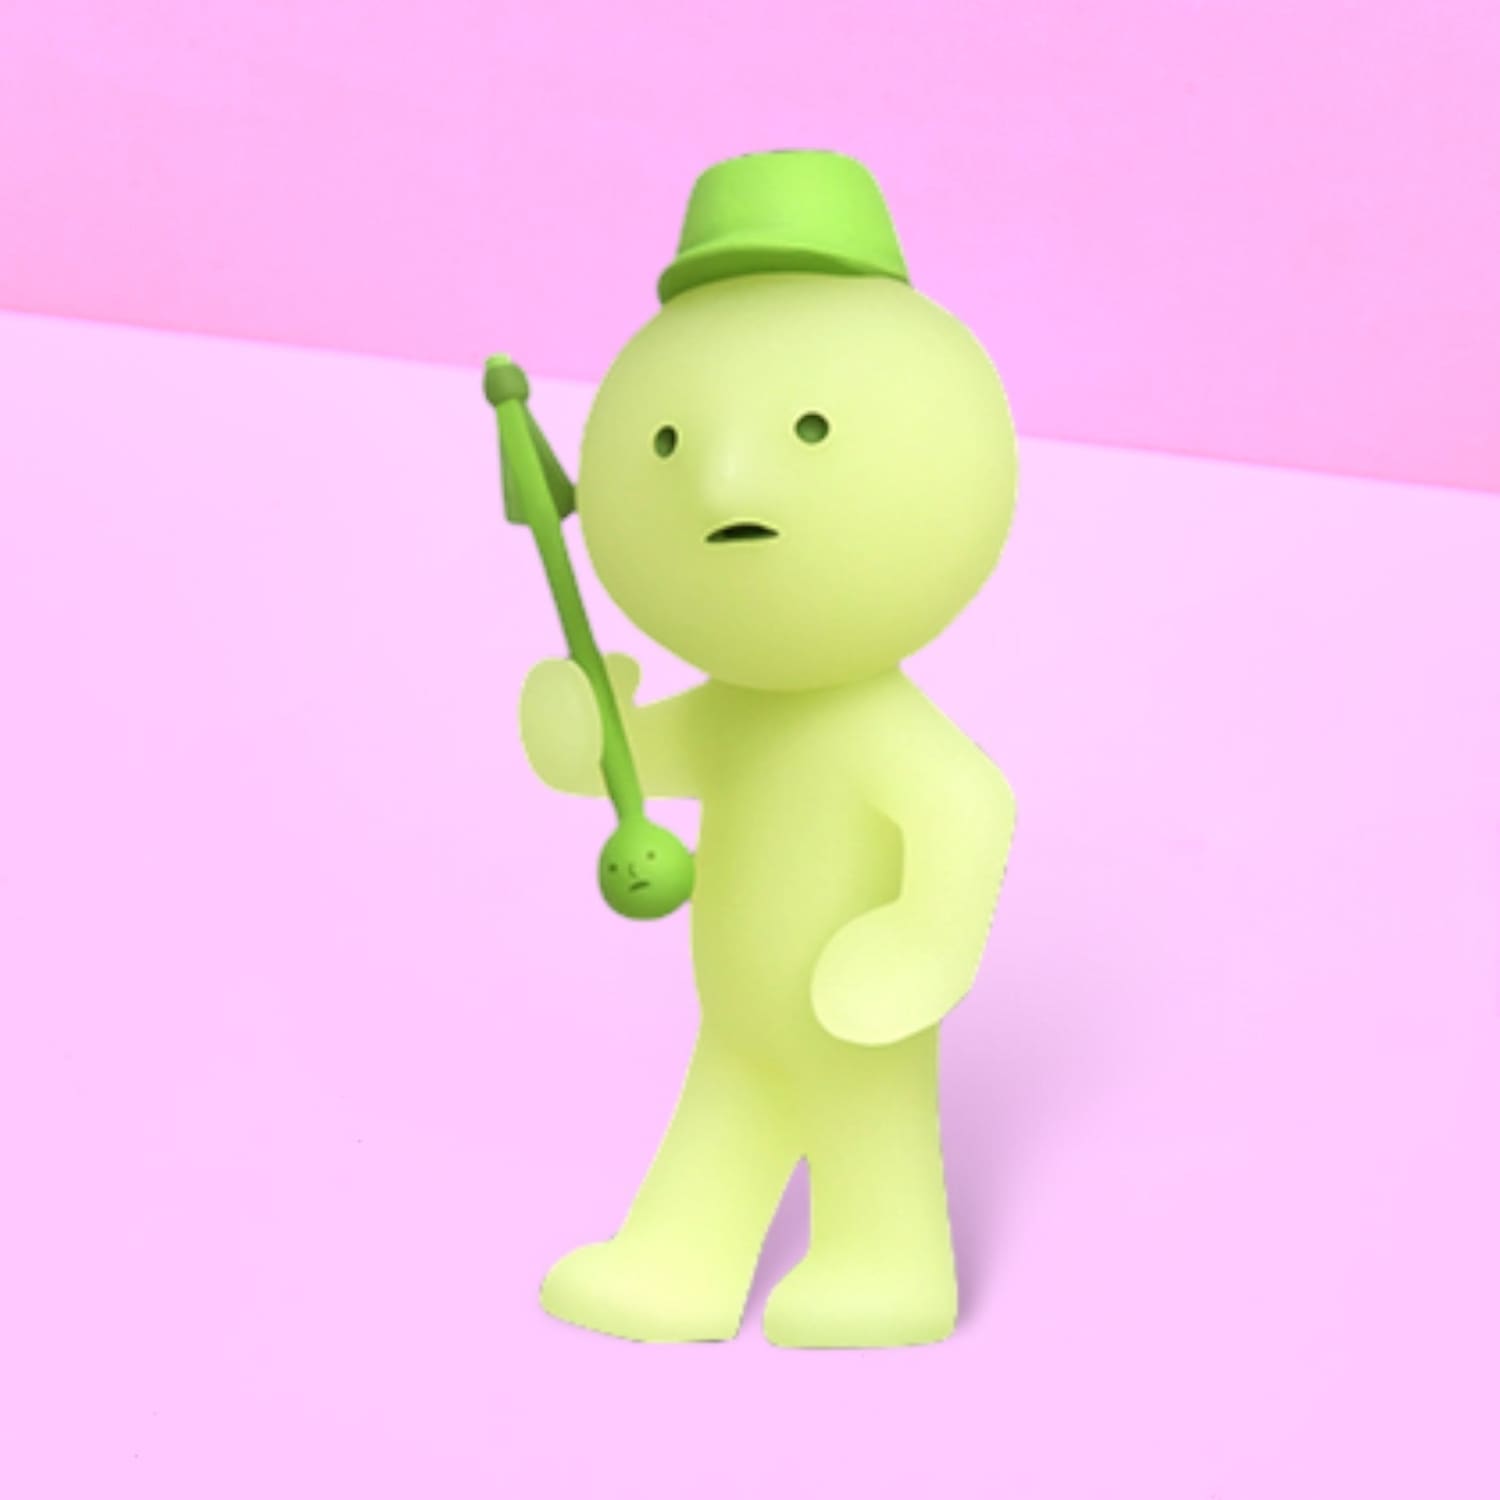 Smiski Mini Figure - Cheer Blind Box Collectible Kawaii